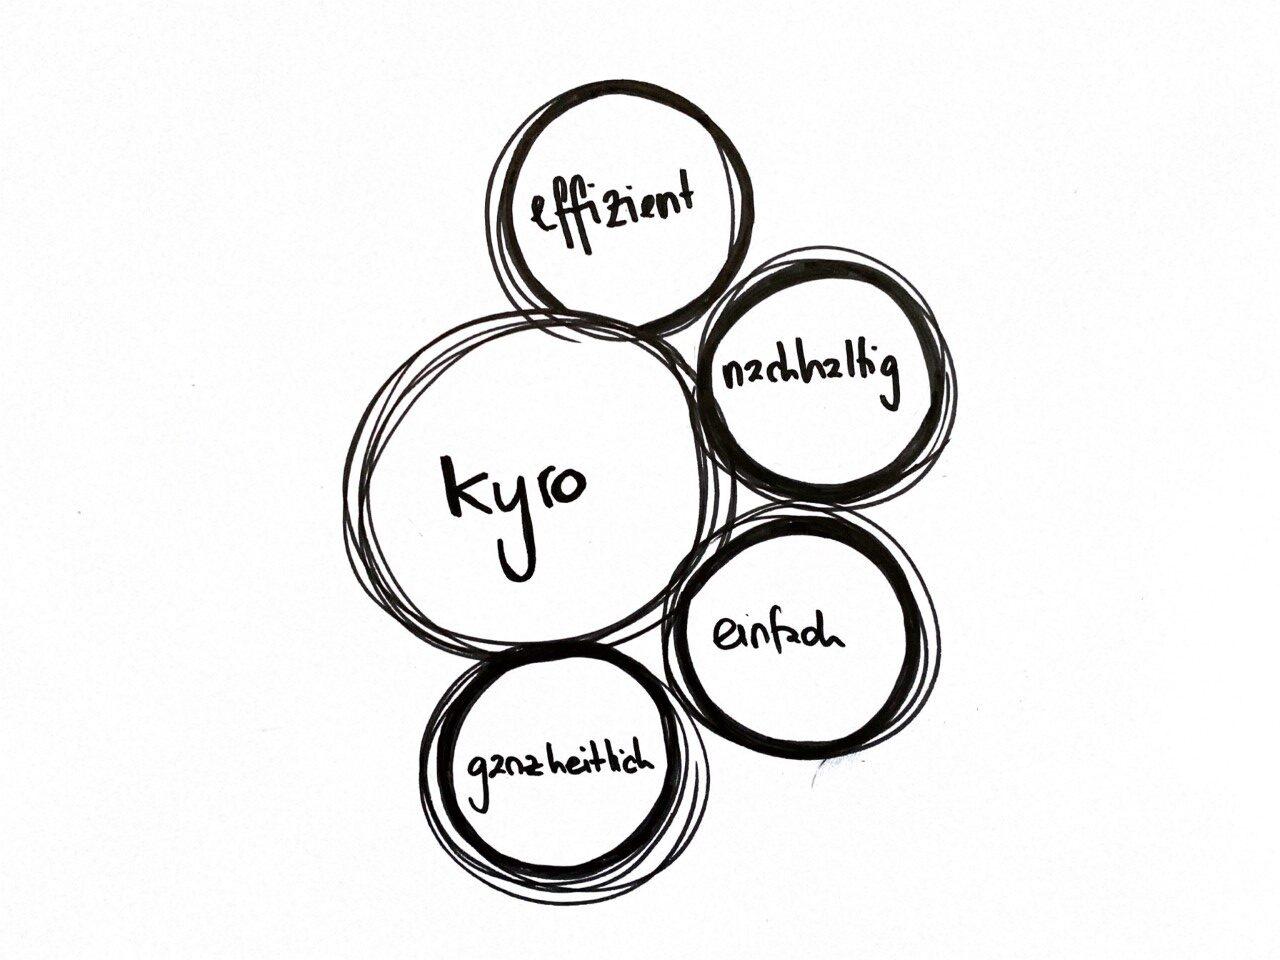 Fünf skizzierte Kreise mit den Innschriften kyro, effizient, nachhaltig, einfach und ganzheitlich - als Symbol für die Steigerung der Prozessperformance mit kyro